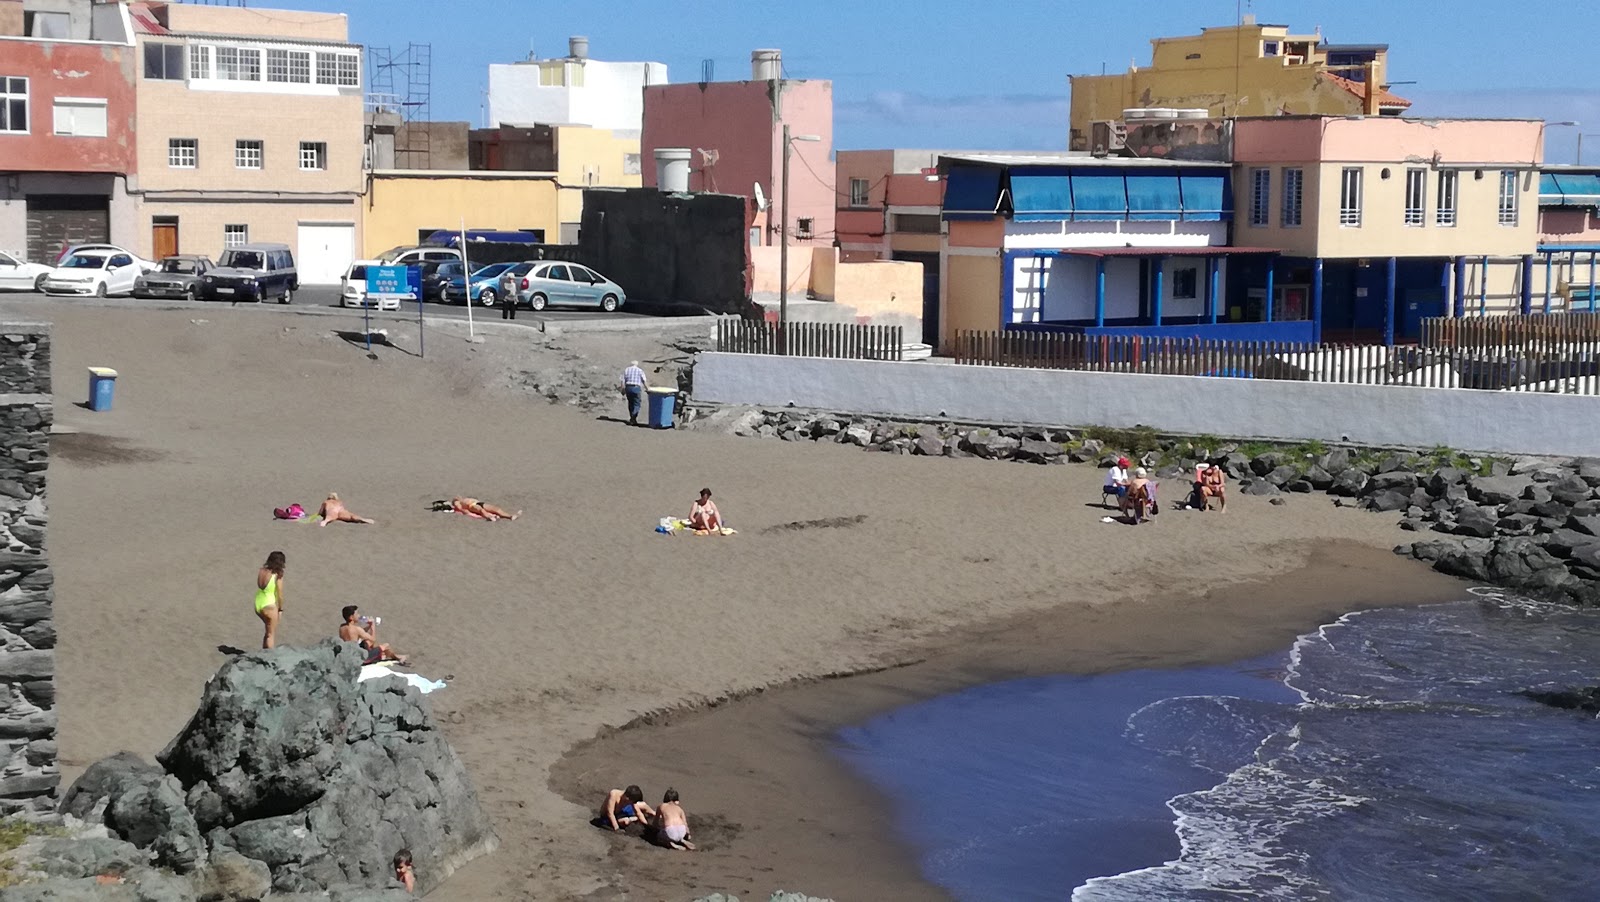 Playa del Muelle'in fotoğrafı çok temiz temizlik seviyesi ile